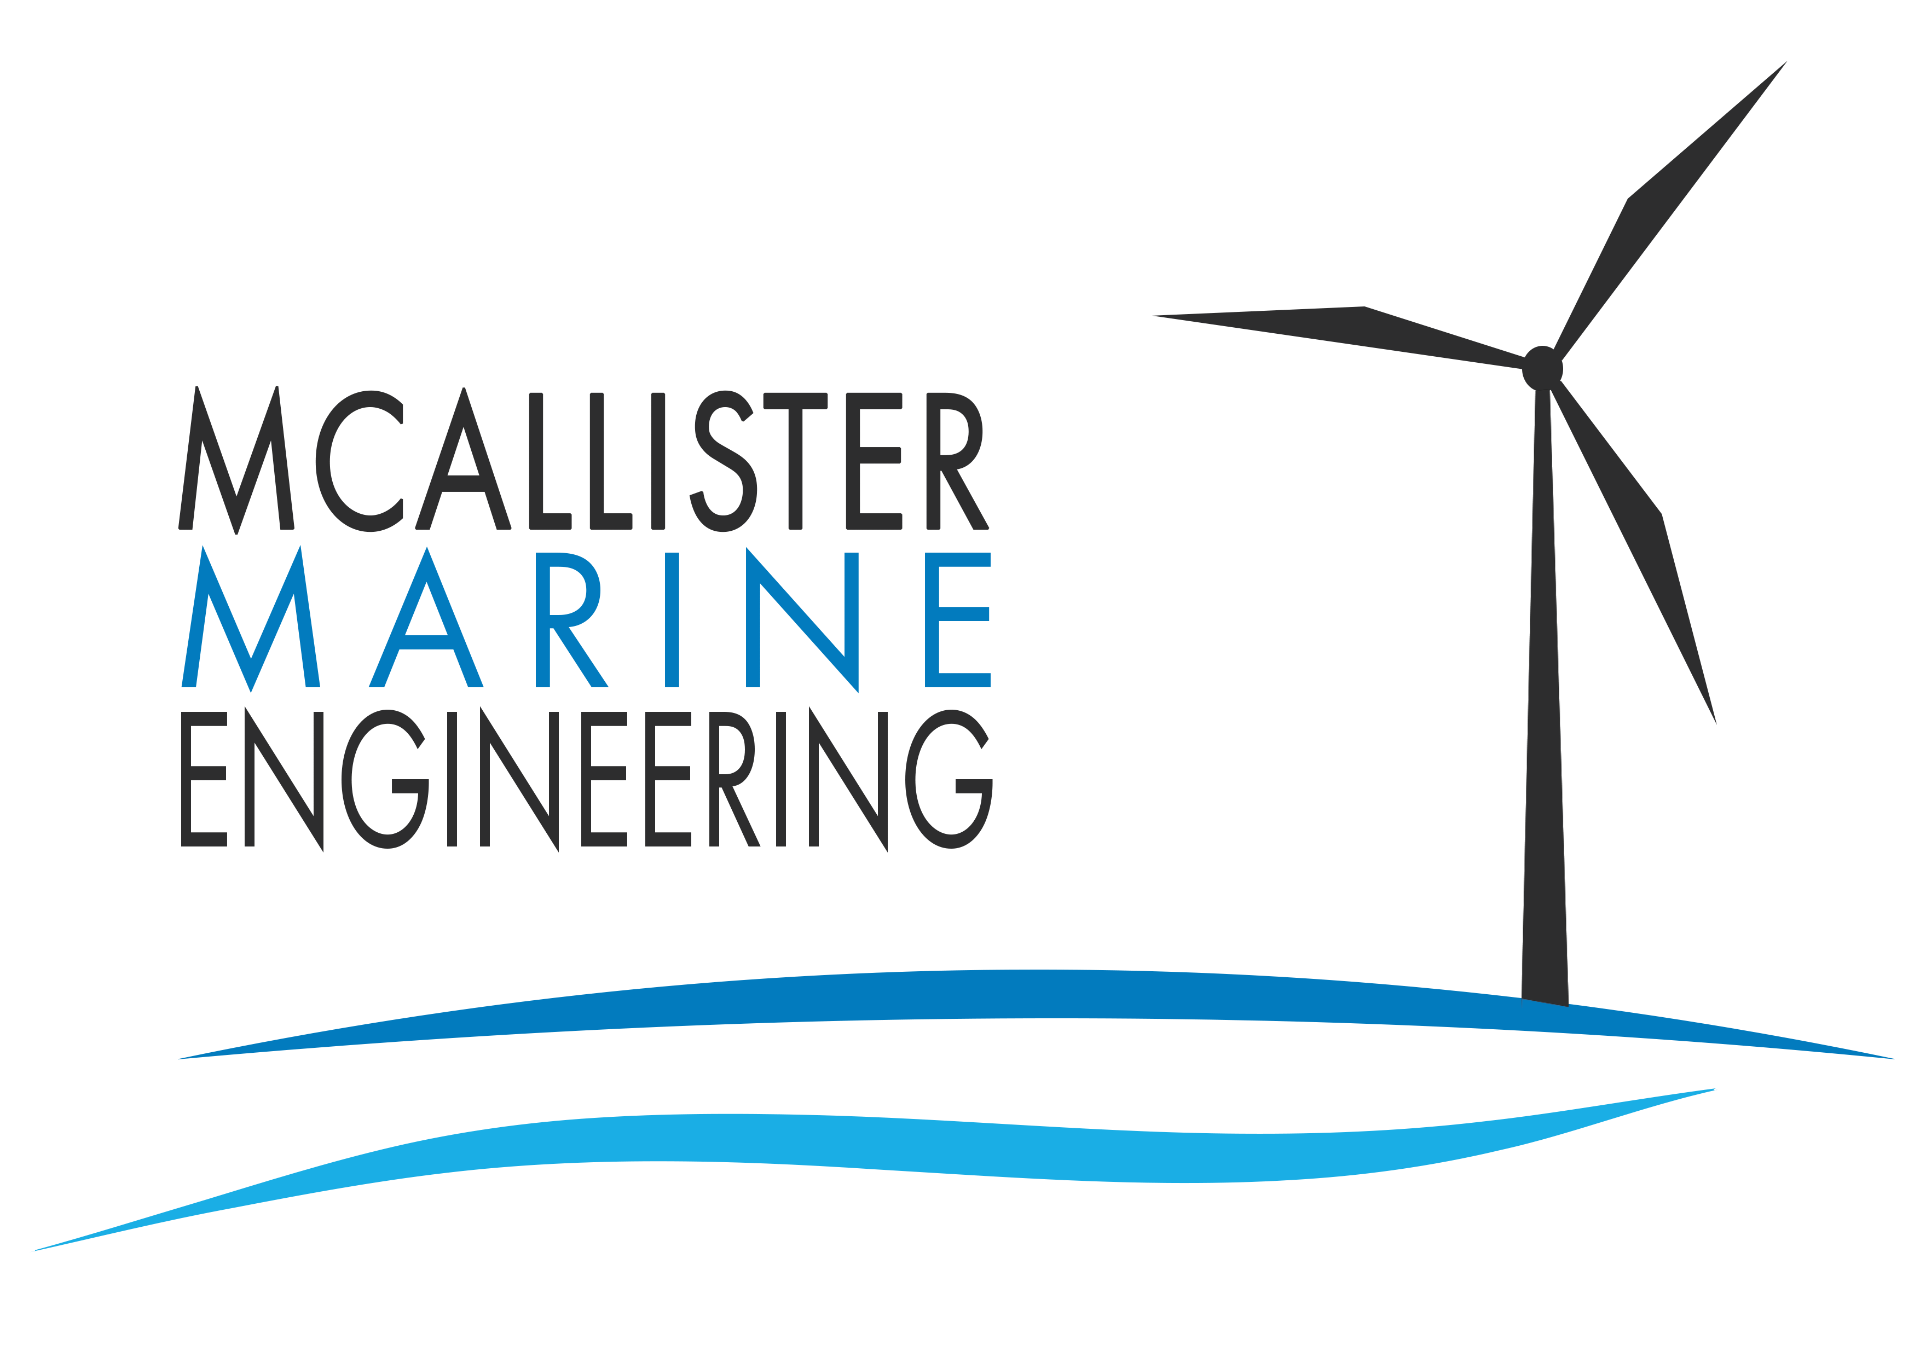 McAllister Marine Engineering LLC